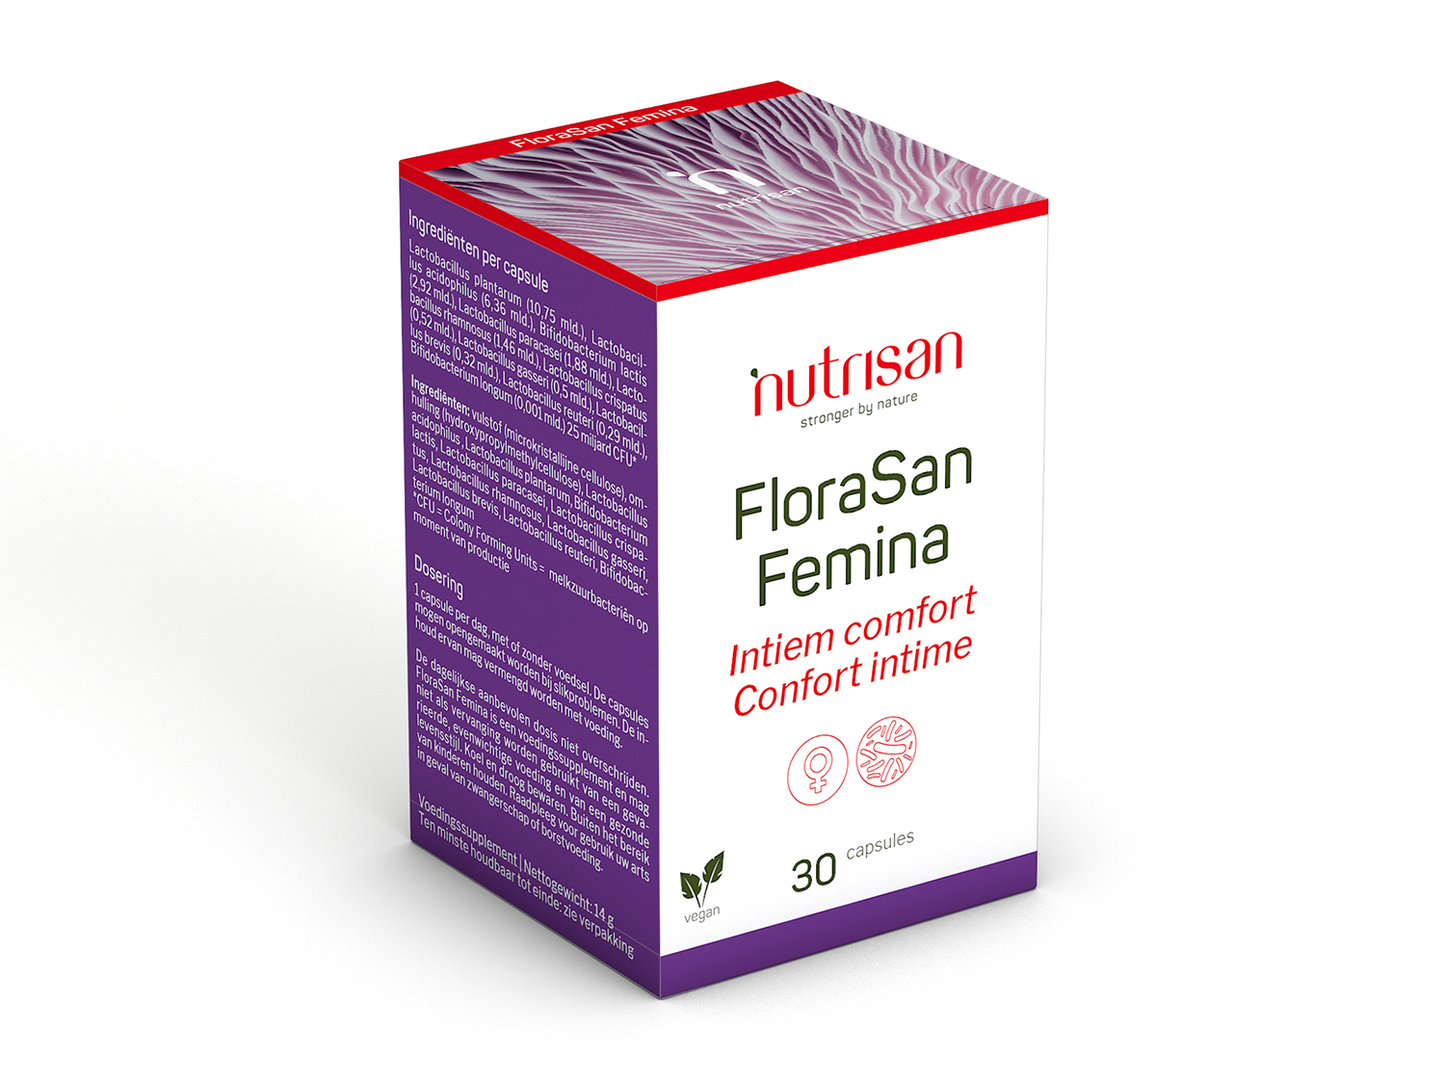 Nutrisan FloraSan Femina - 30 capsules - Supplement voor intiem comfort